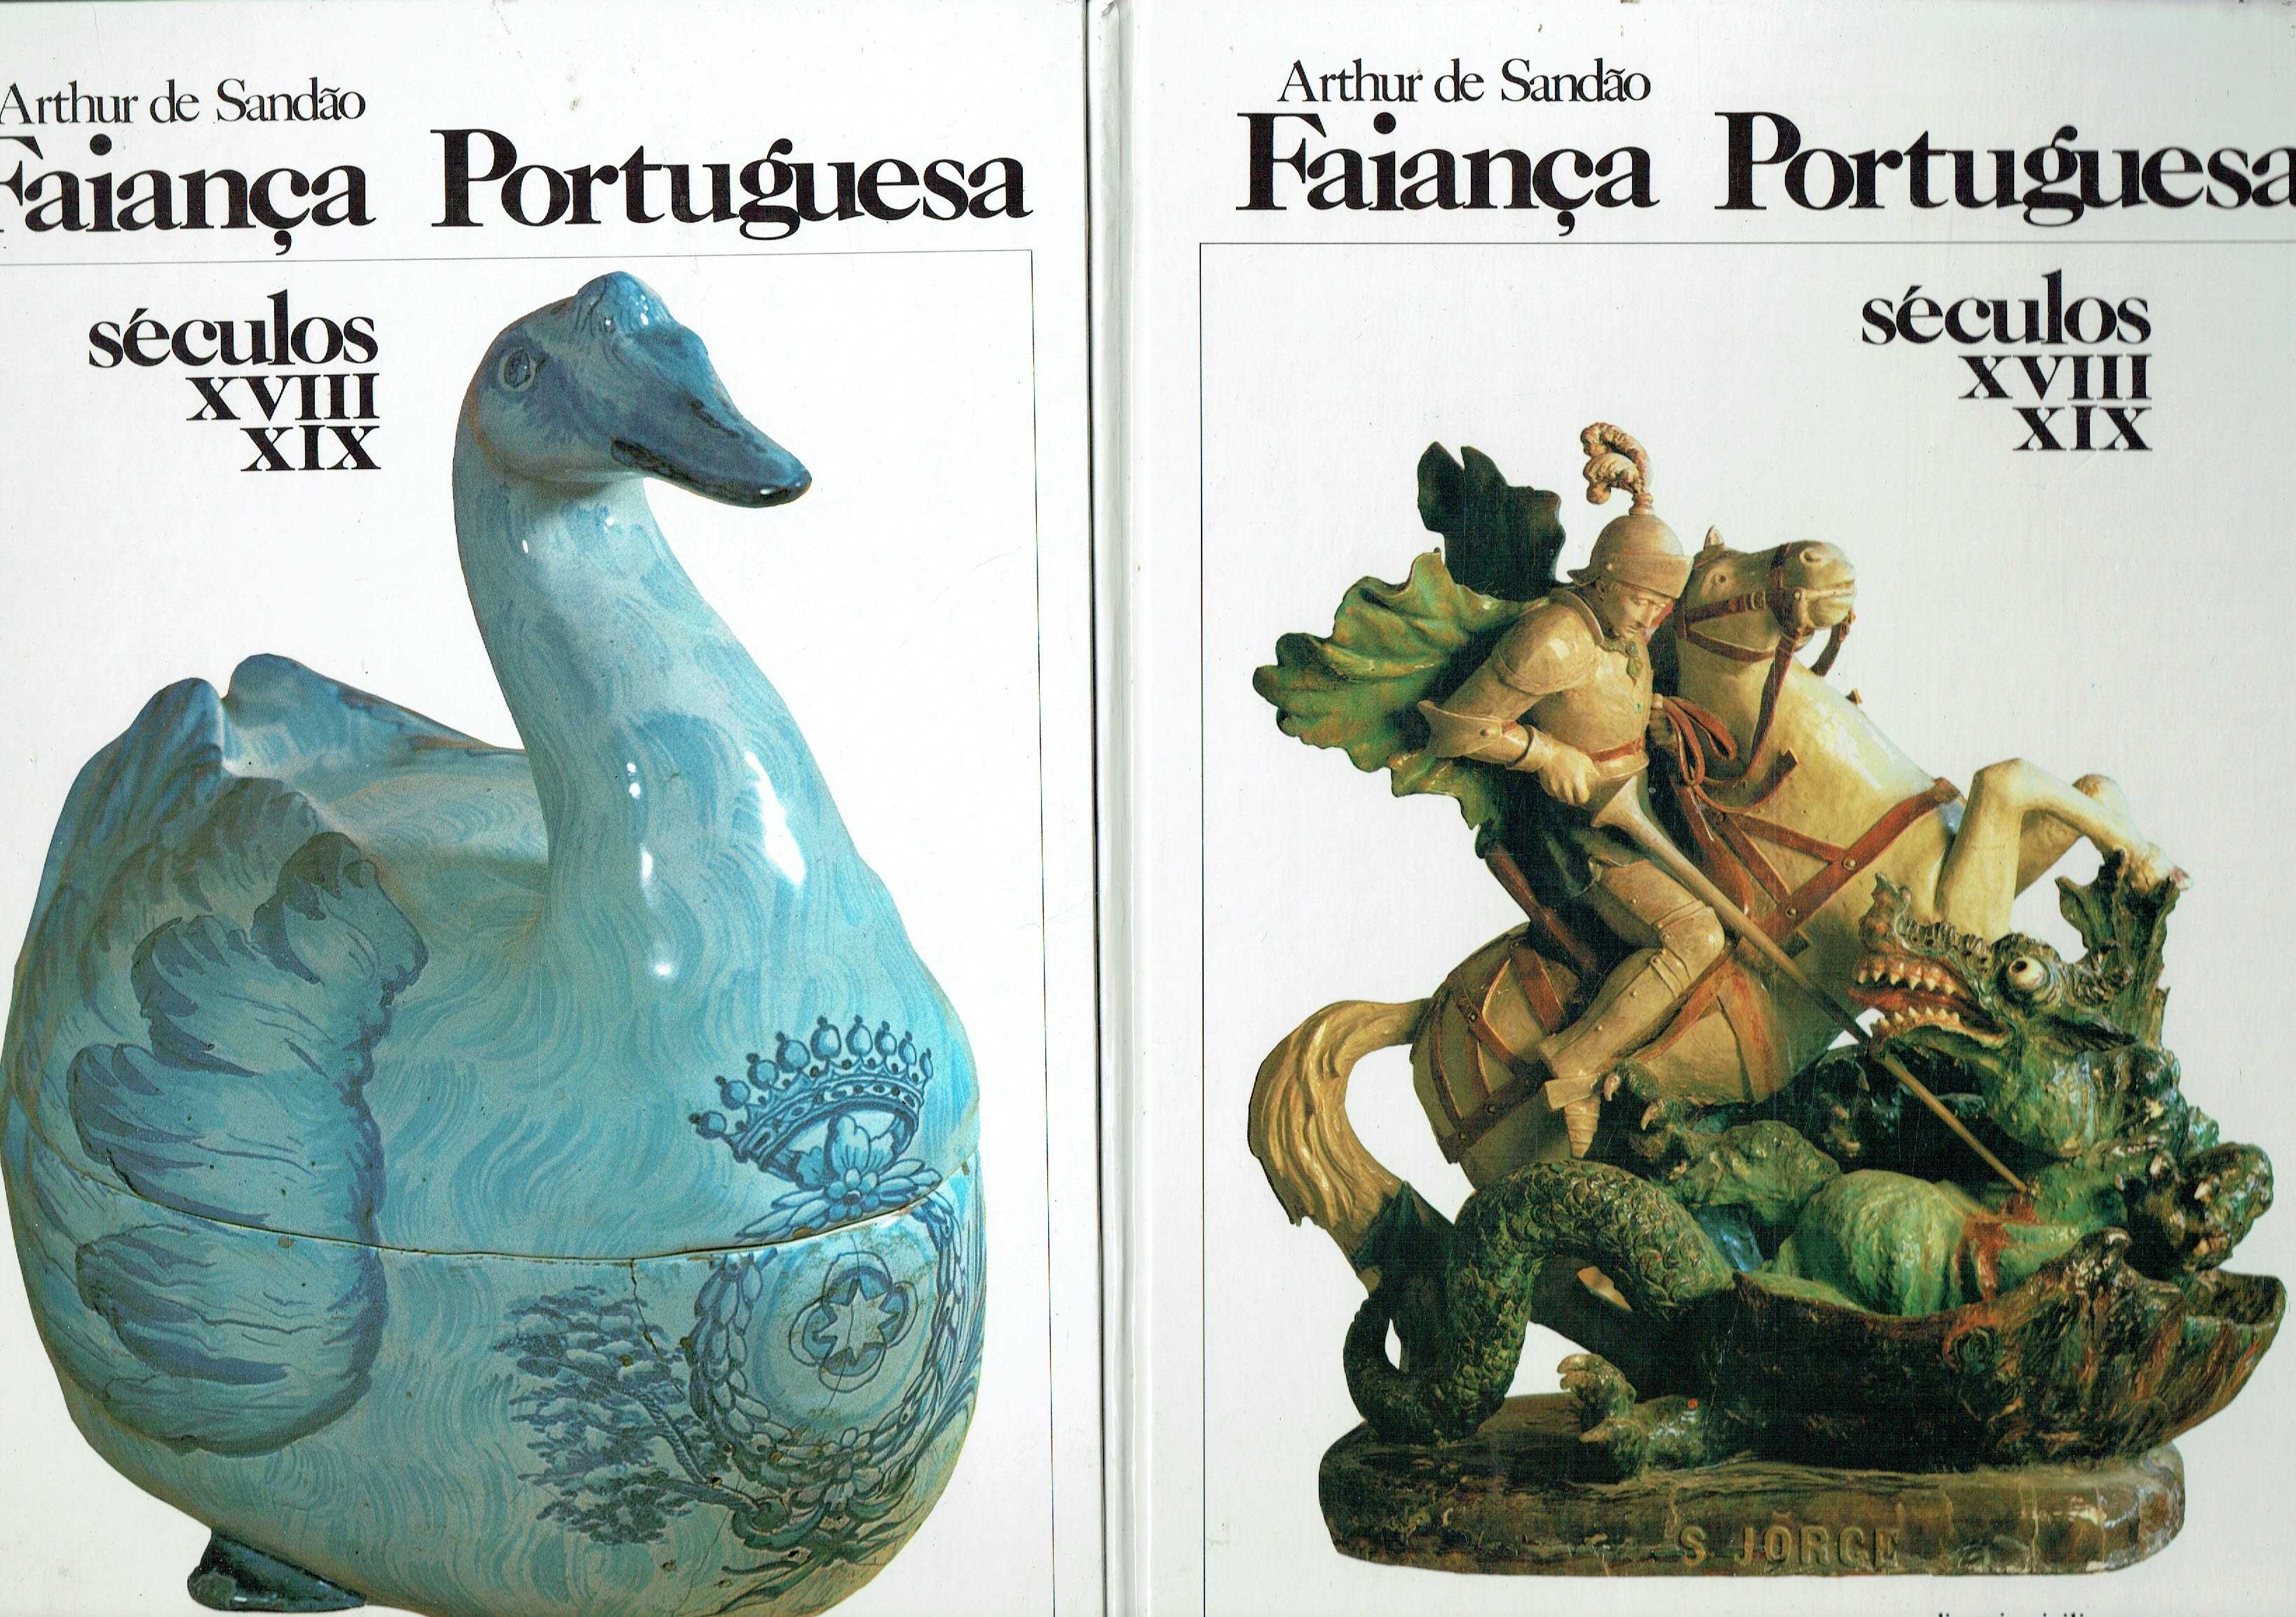 7430

Faiança portuguesa séculos XVIII e XIX 
de Arthur de Sandão.